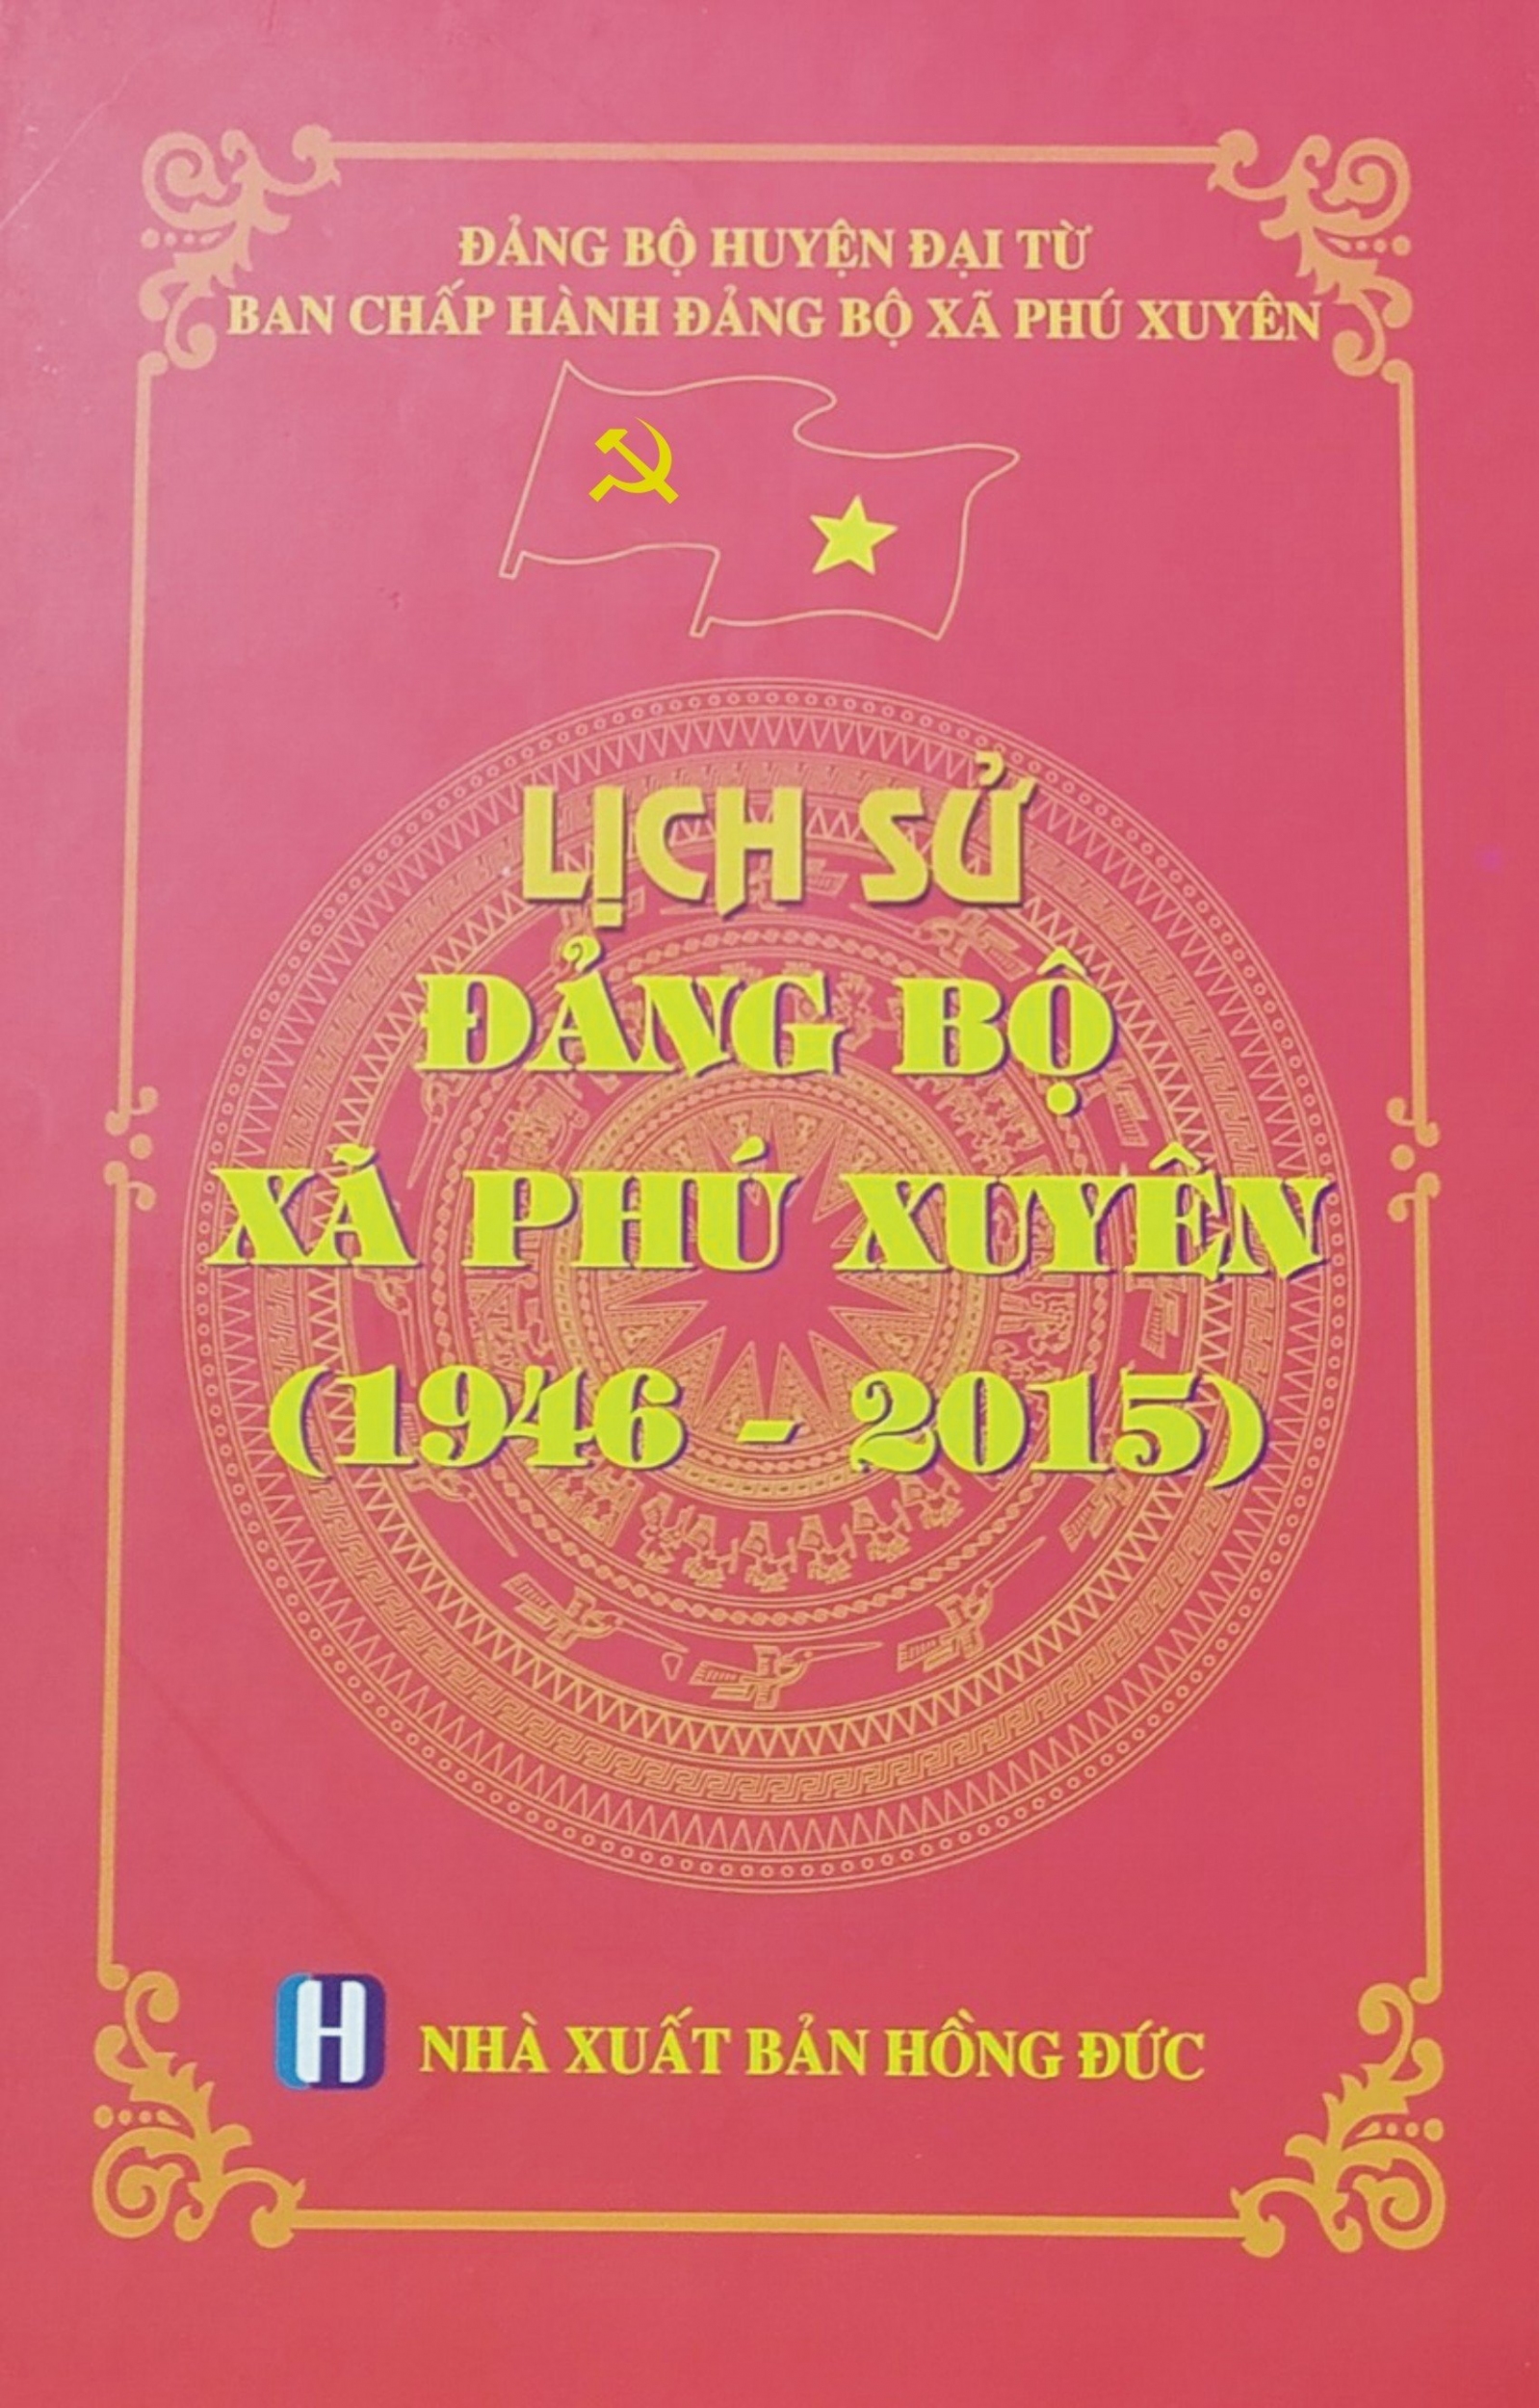 Lịch sử Đảng bộ xã Phú Xuyên (1946 - 2015)